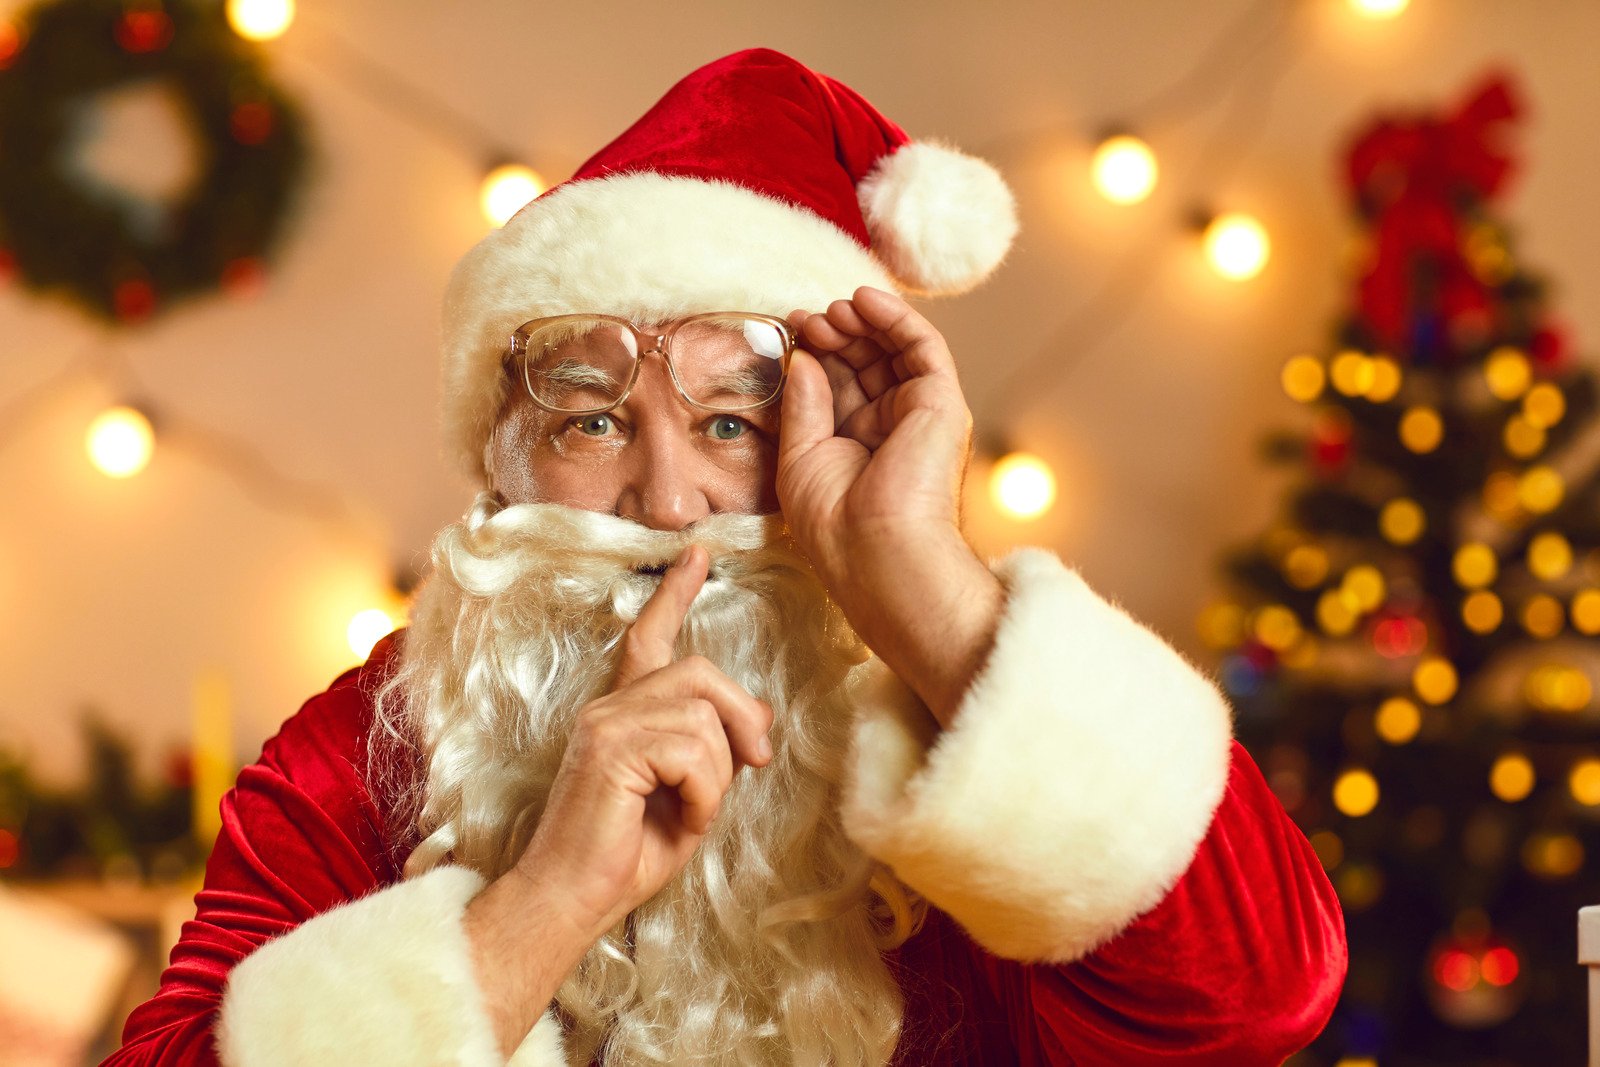 Santa Claus Saying Shush during Video Call, Asking Us to Keep Wonderful, Magic Secret